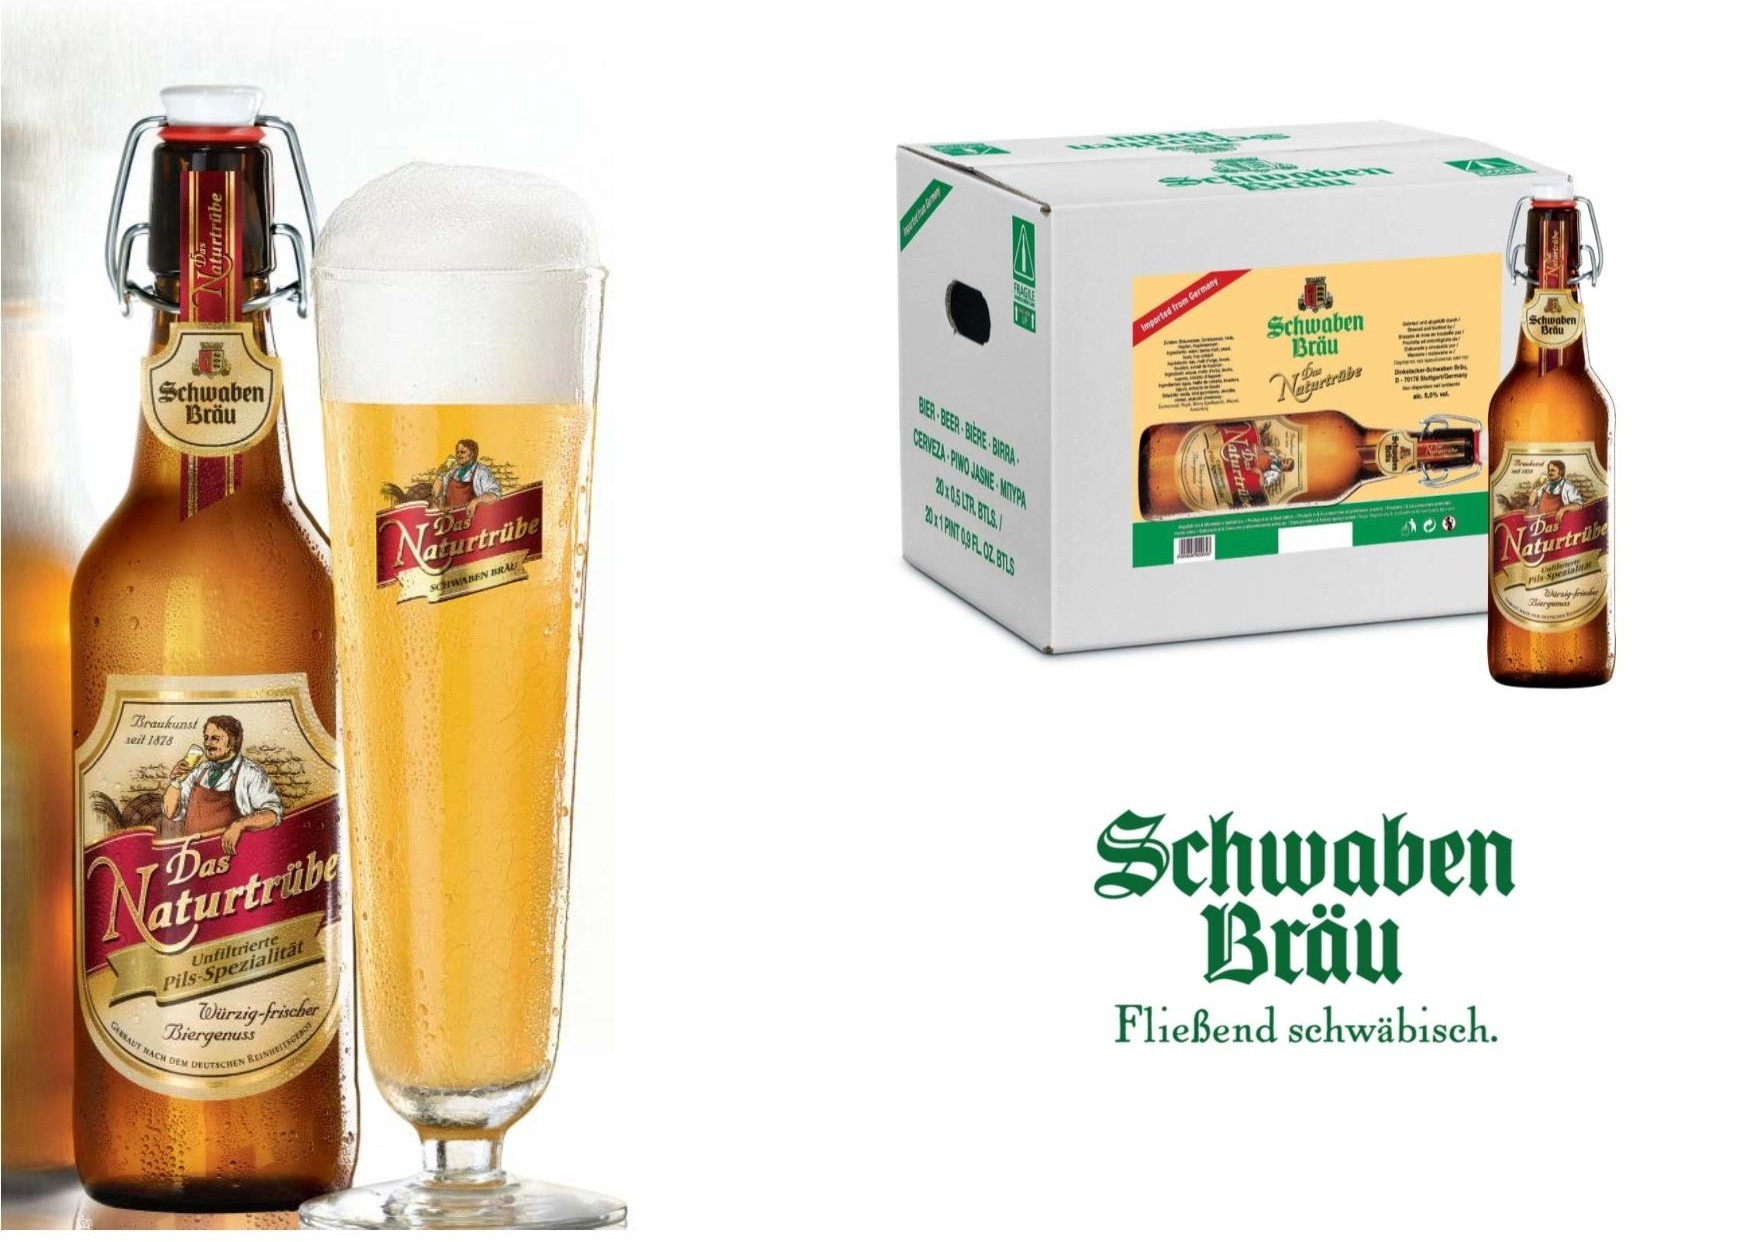 Bia Schwaben Brau Das Naturtrube 5% Đức – 20 chai 500ml